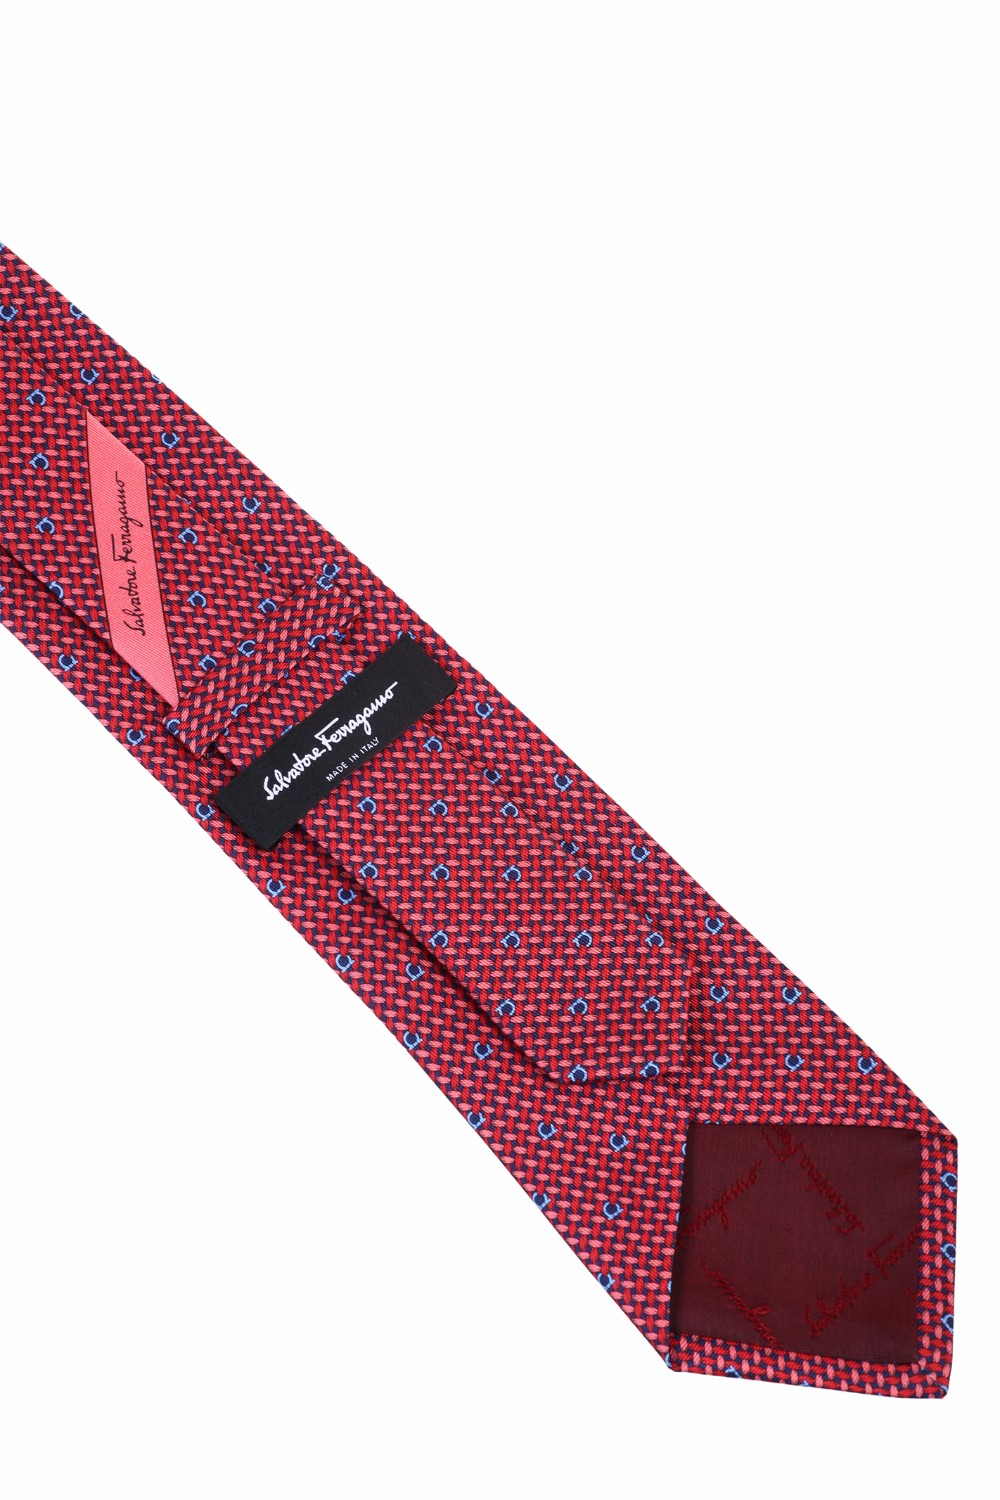 shop SALVATORE FERRAGAMO  Cravatta: Salvatore Ferragamo cravatta in seta stampa Maglia e Gancini.
Composizione: 100% seta.
Made in Italy.. 350263-ROSSO/AZZURRO number 6822503